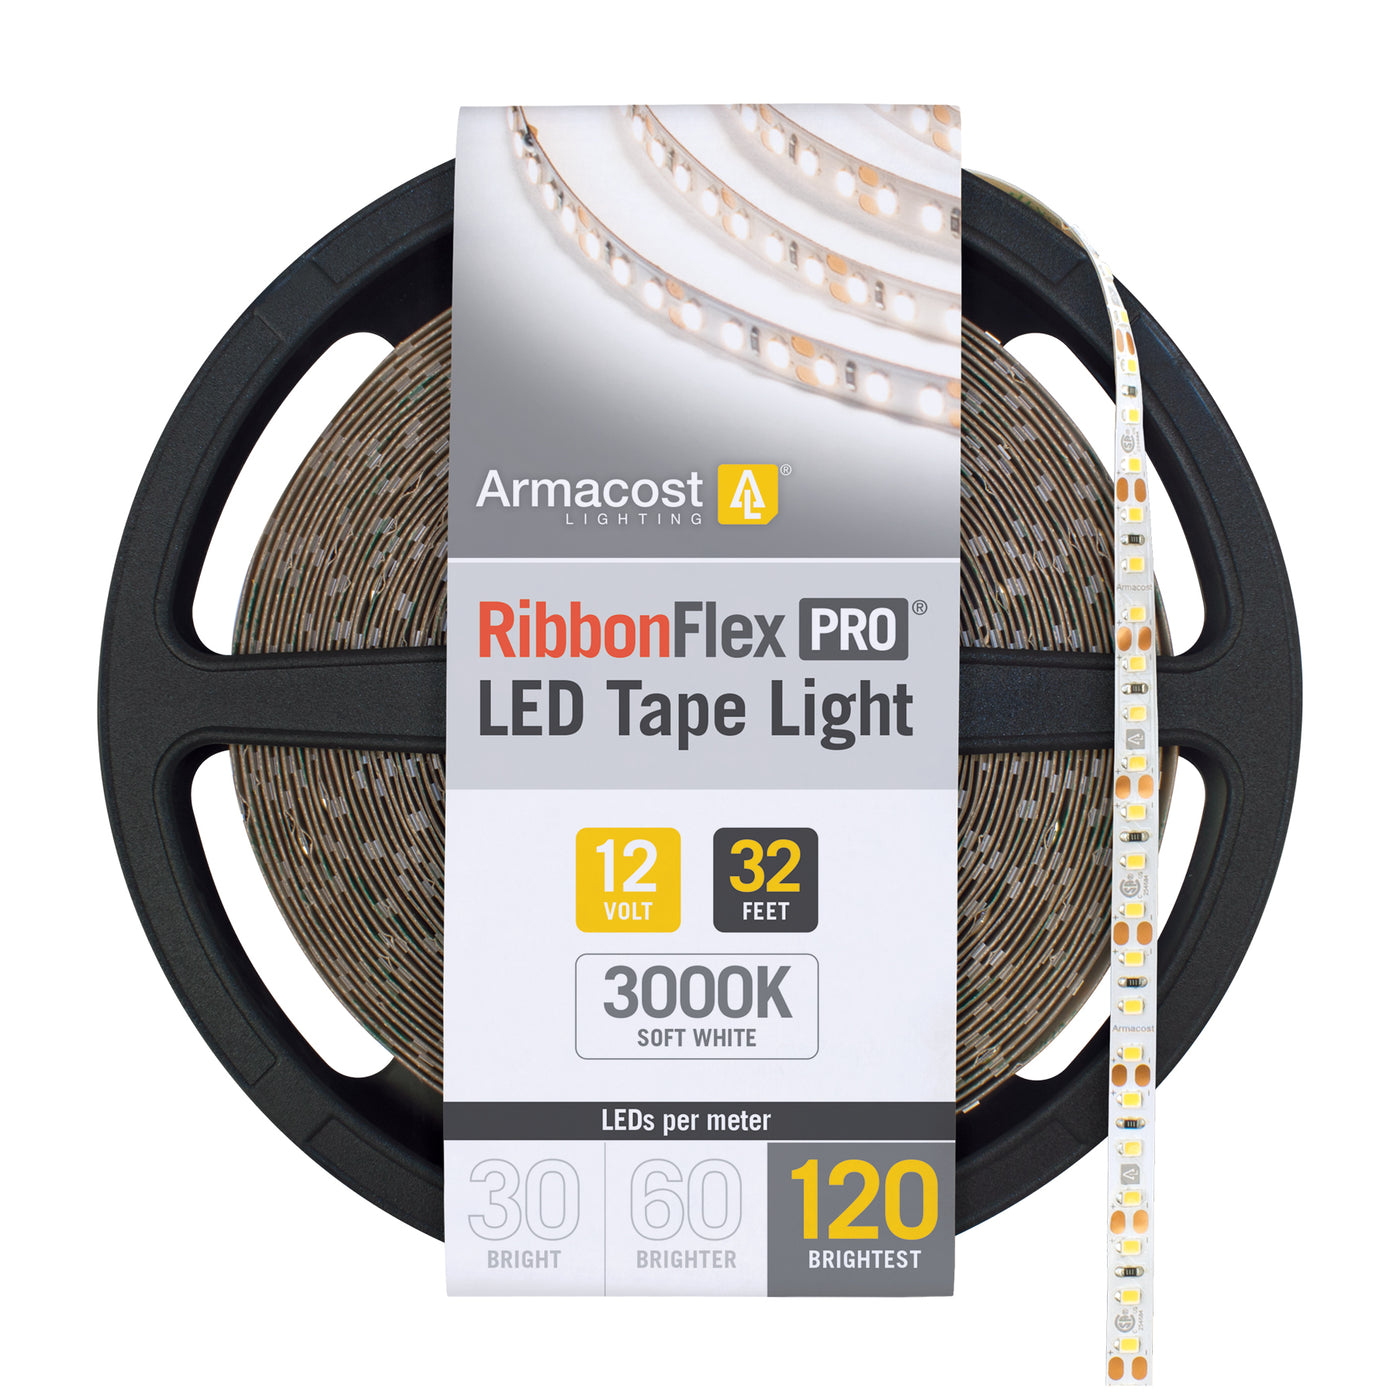 RibbonFlex Pro 12V White LED Tape Light 120 LED/m, 3000K or 4000K